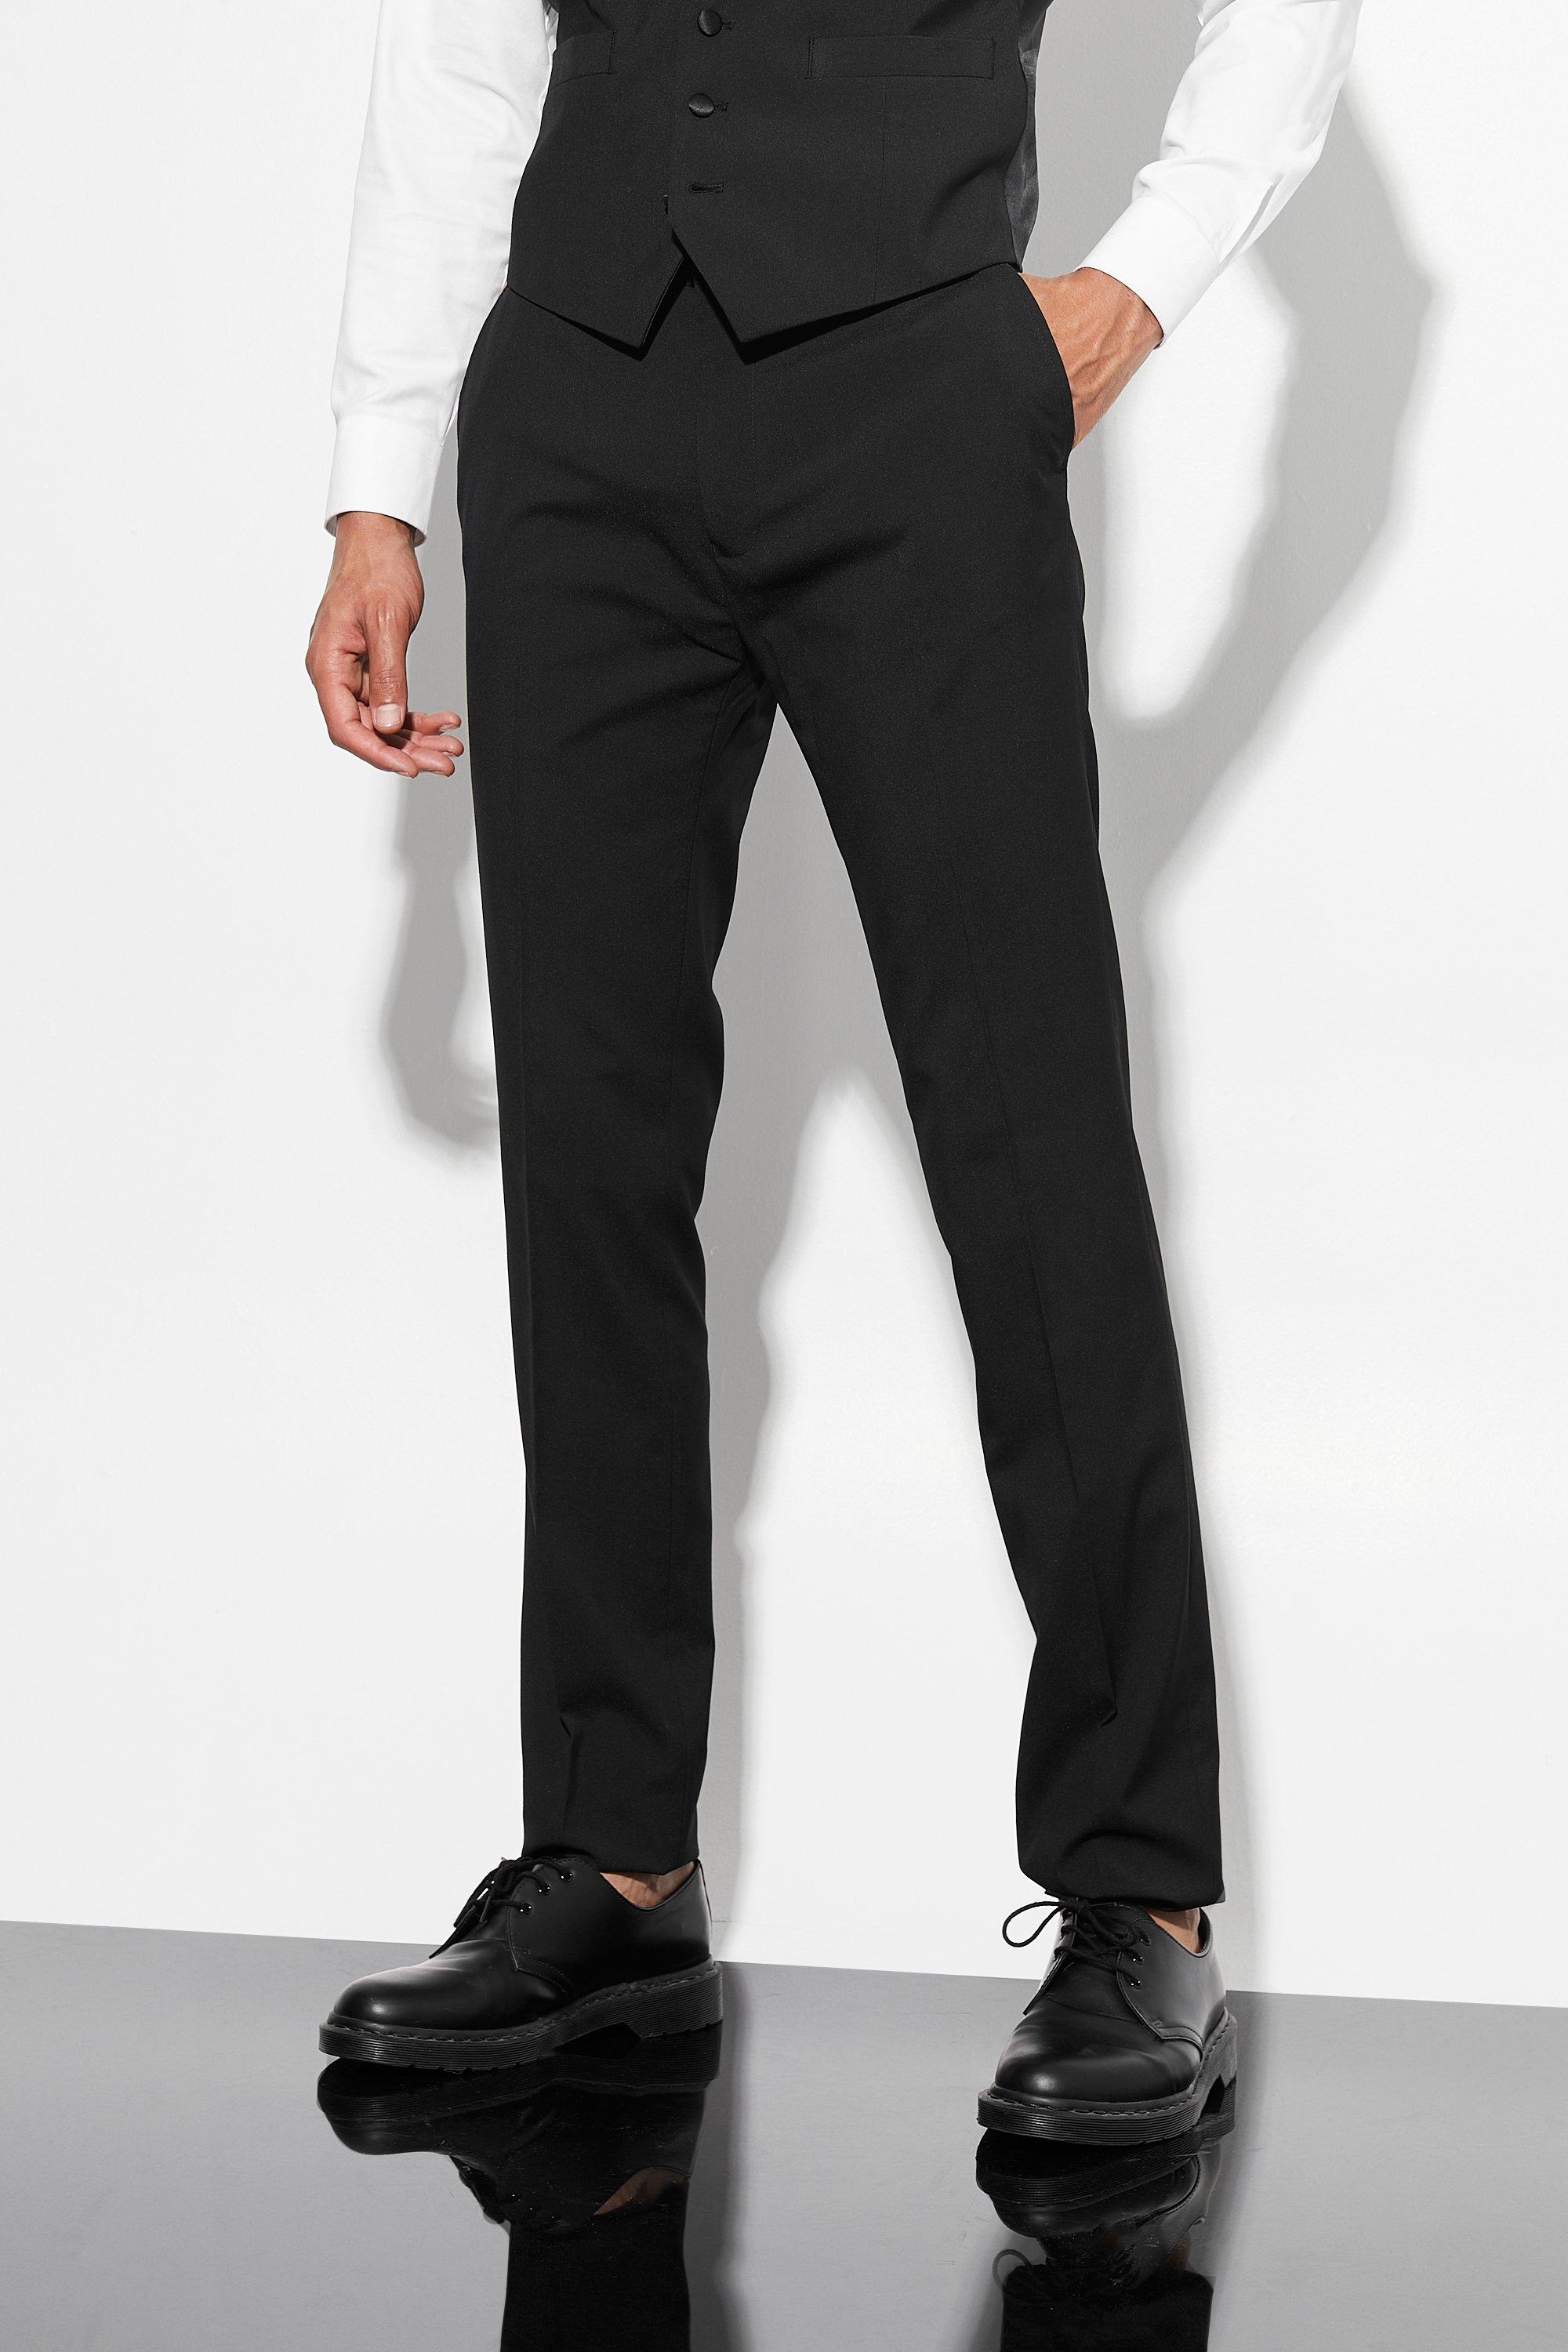 tall - pantalon de costume skinny homme - noir - 34, noir